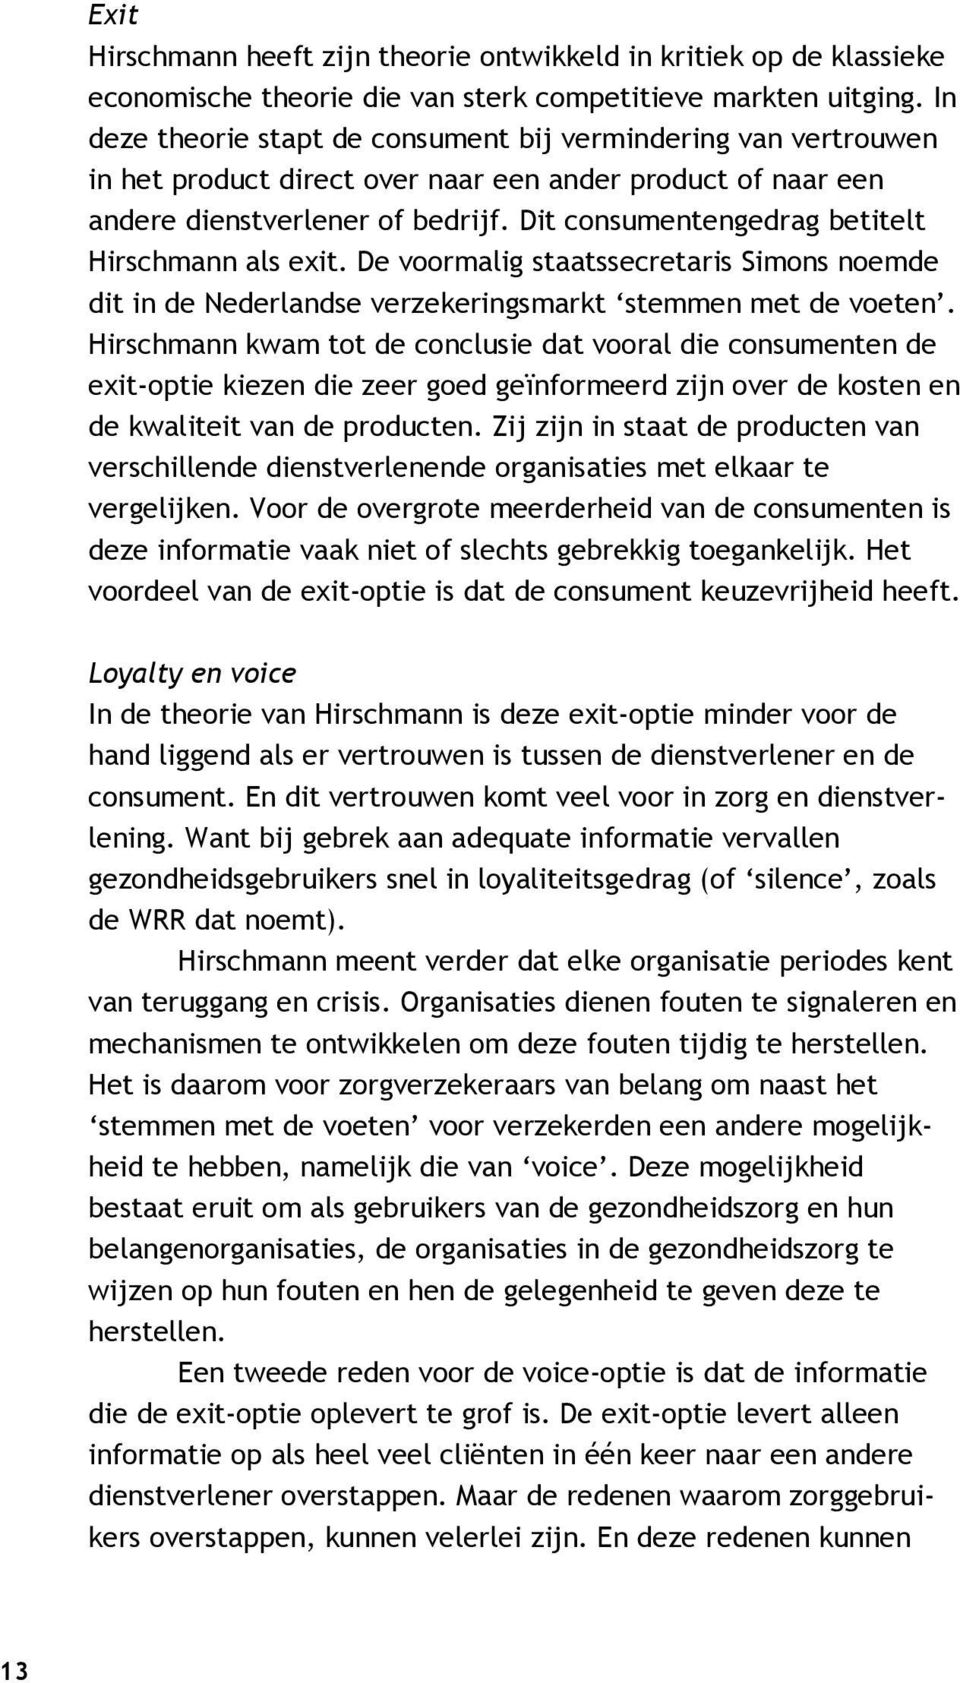 Dit consumentengedrag betitelt Hirschmann als exit. De voormalig staatssecretaris Simons noemde dit in de Nederlandse verzekeringsmarkt stemmen met de voeten.